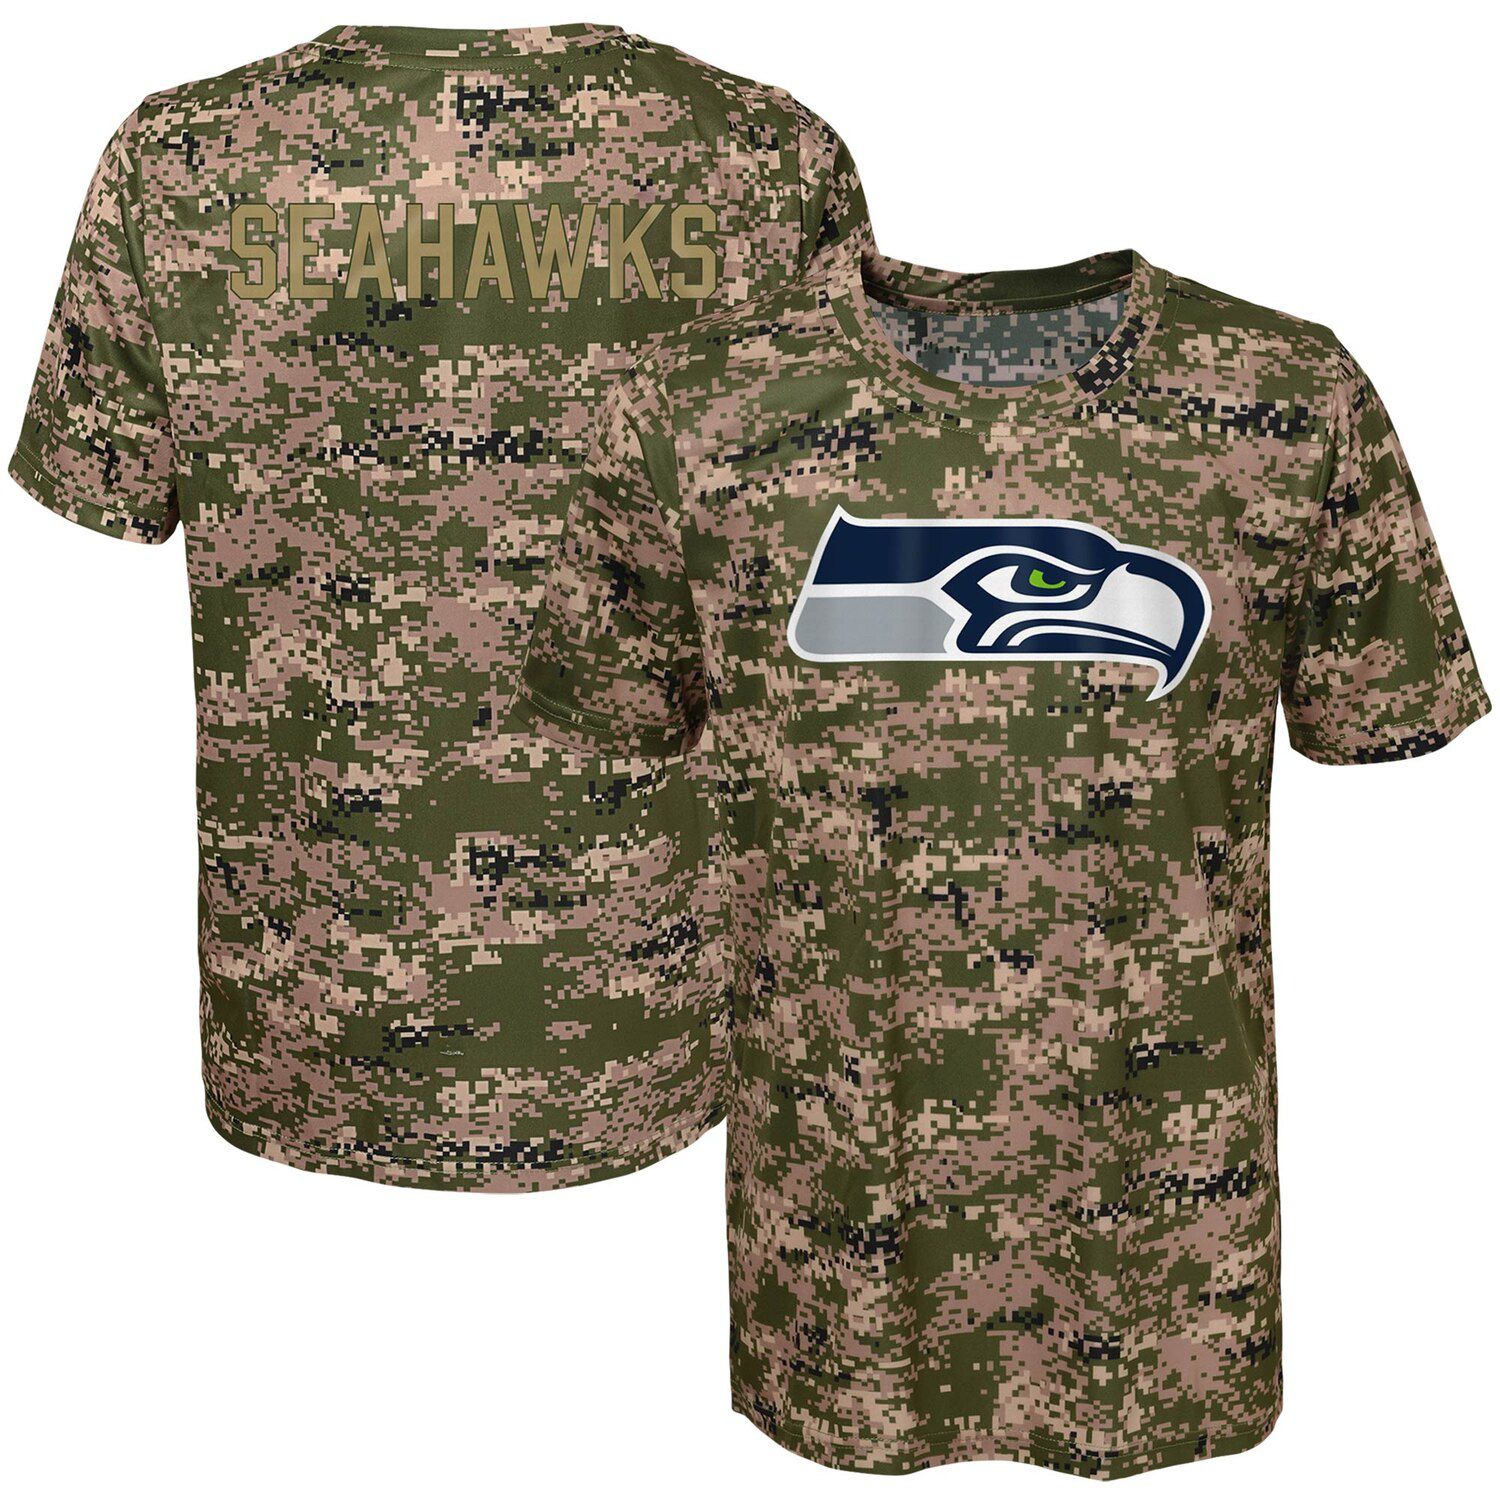 new seahawks jerseys for sale